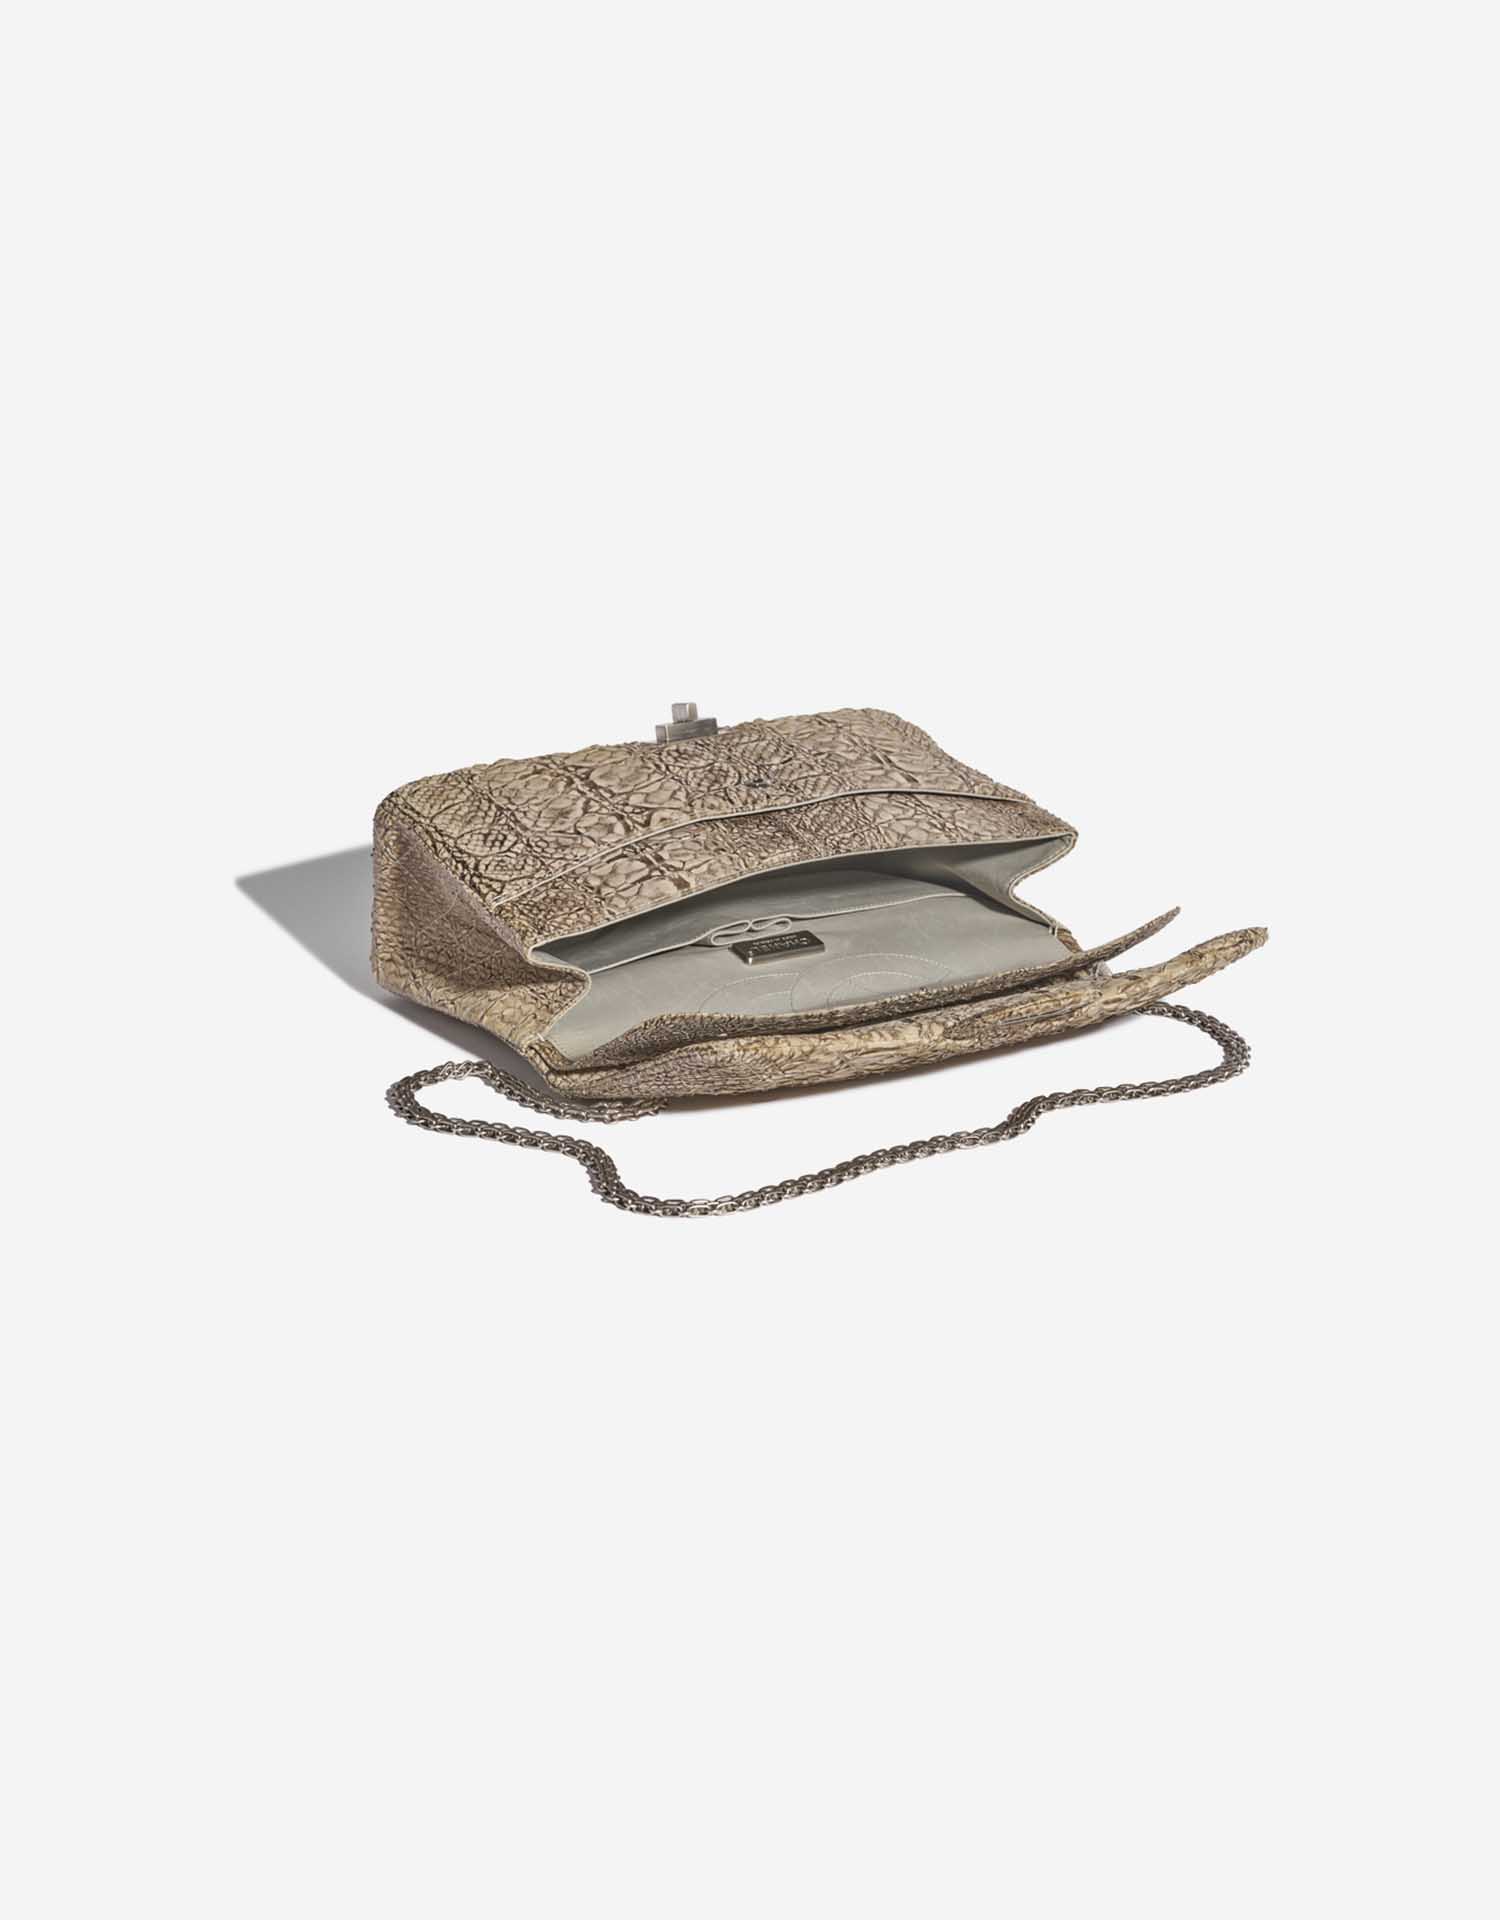 Pre-owned Chanel bag 2.55 Reissue 227 Python Natural Beige Beige Inside | Sell your designer bag on Saclab.com